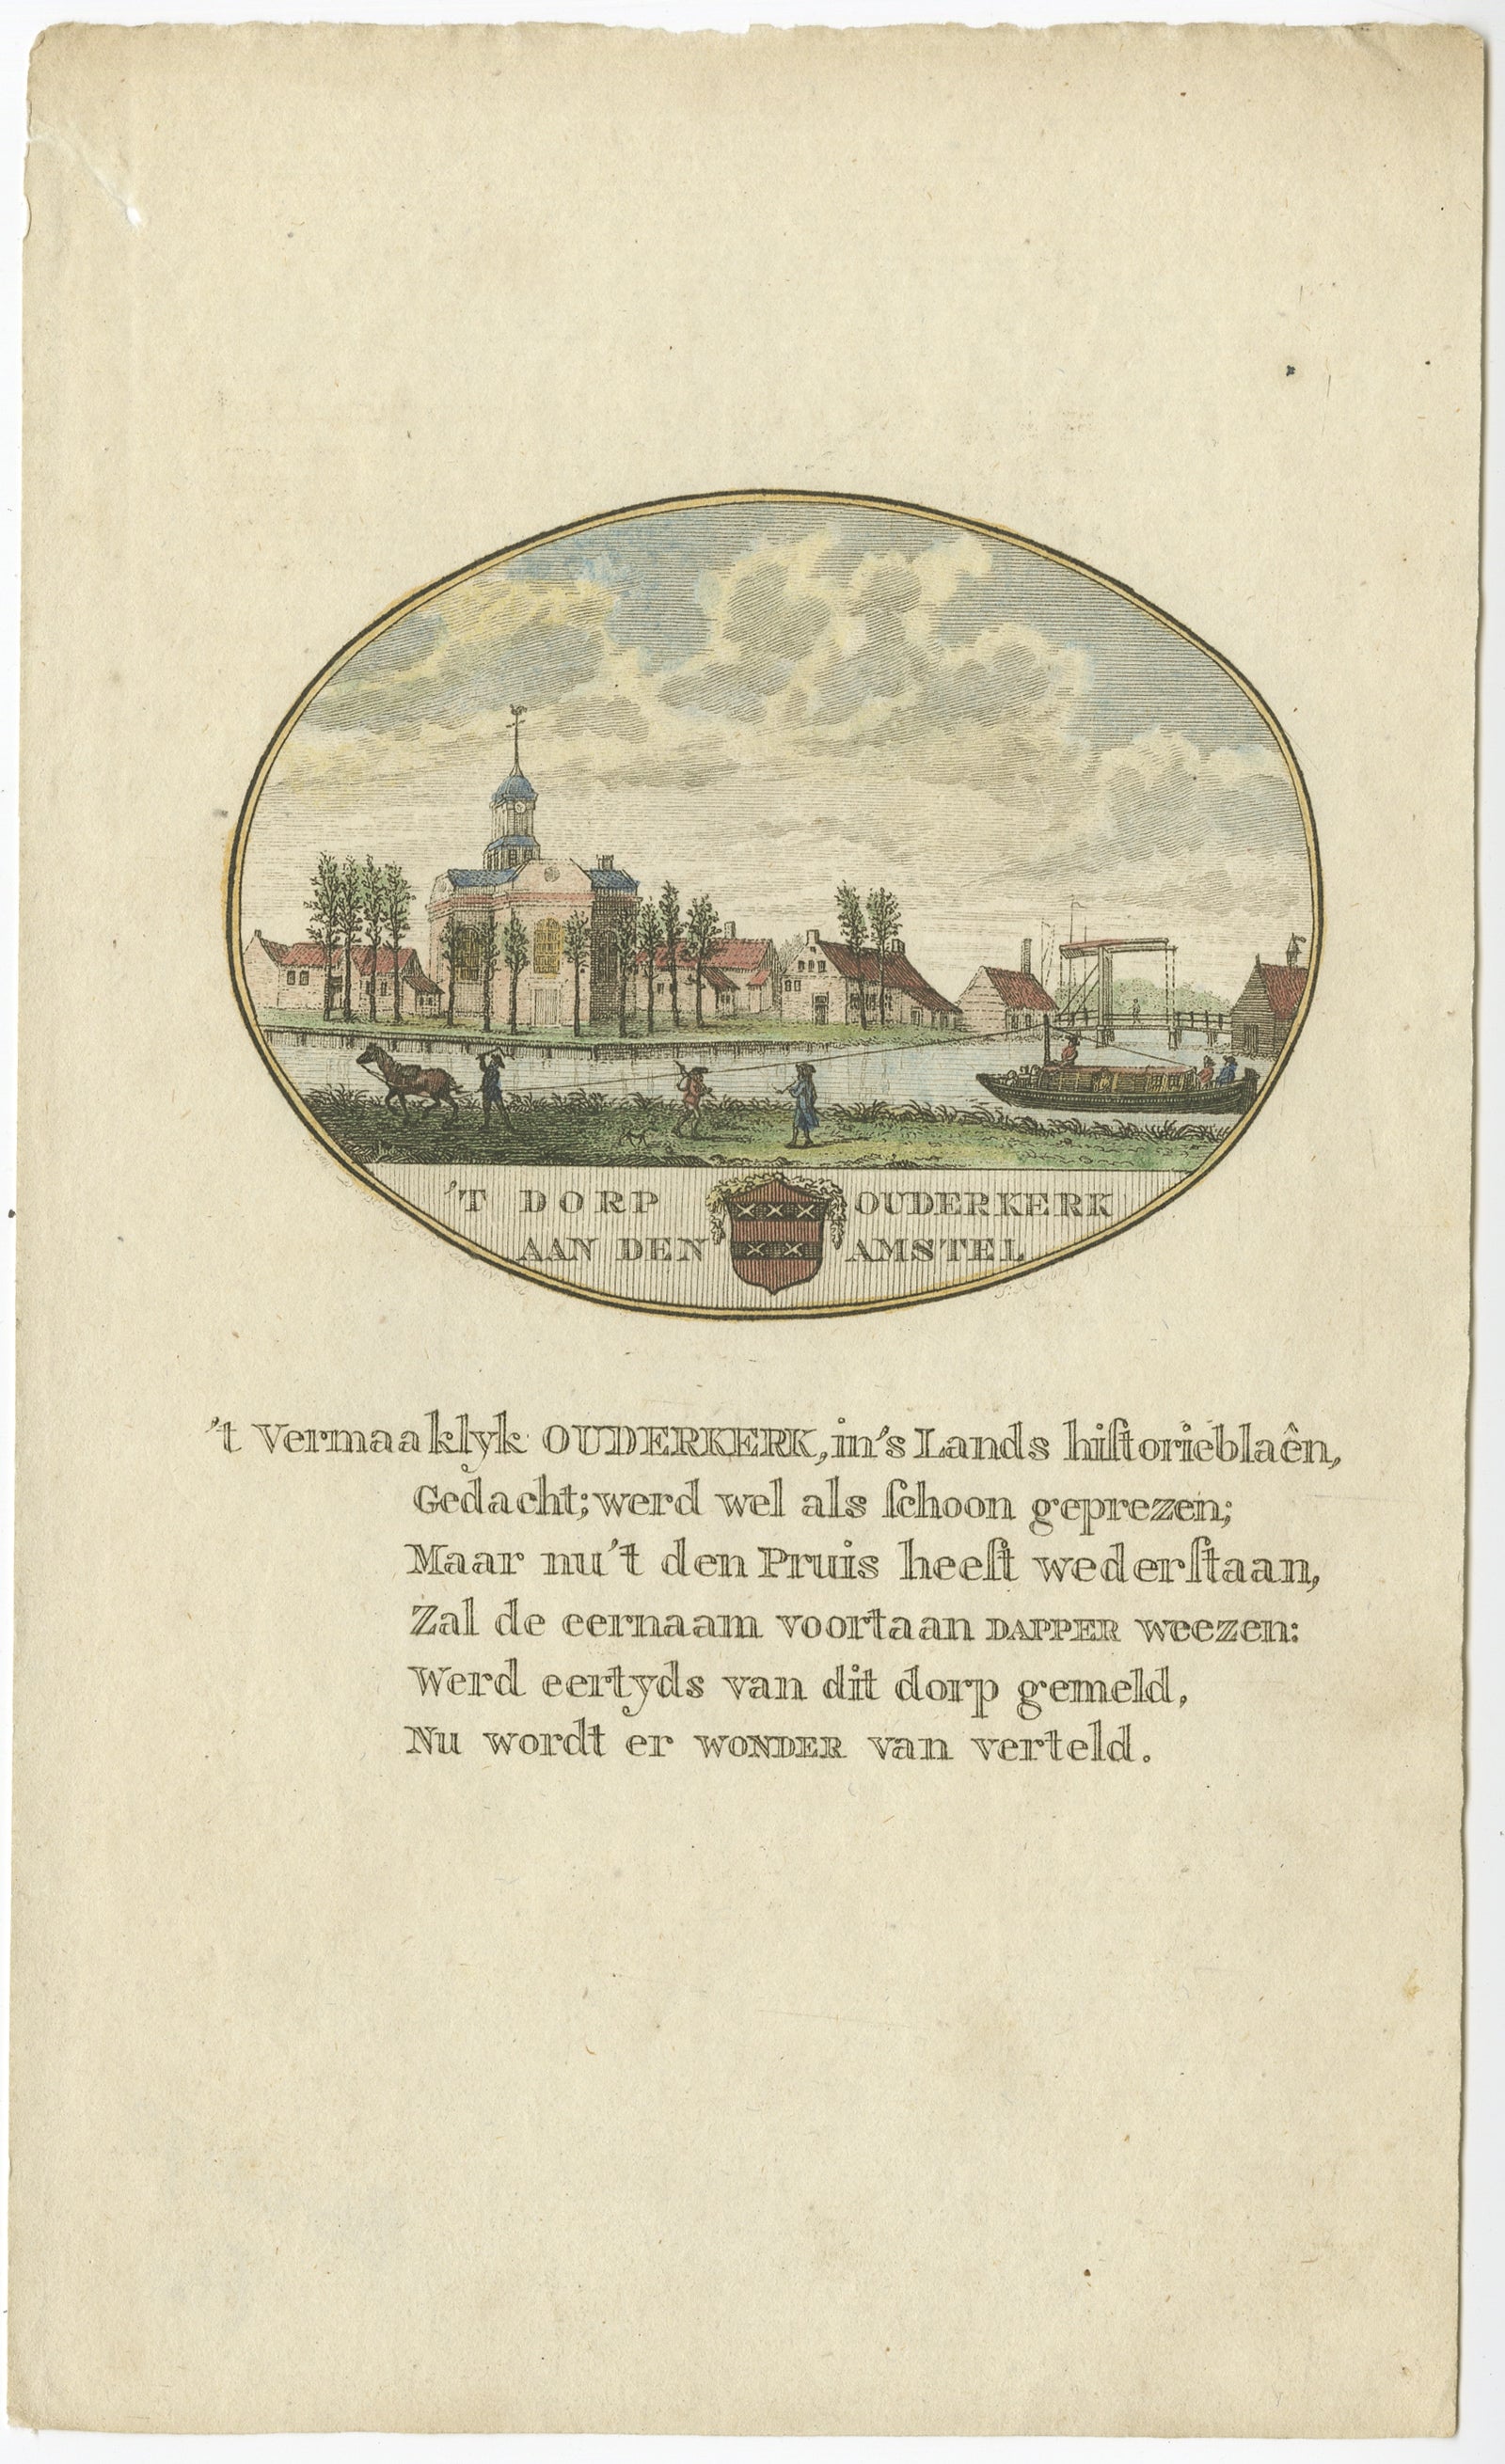 Impression ancienne de la ville d'Audenkerk aan de Amstel, Pays-Bas, 1795